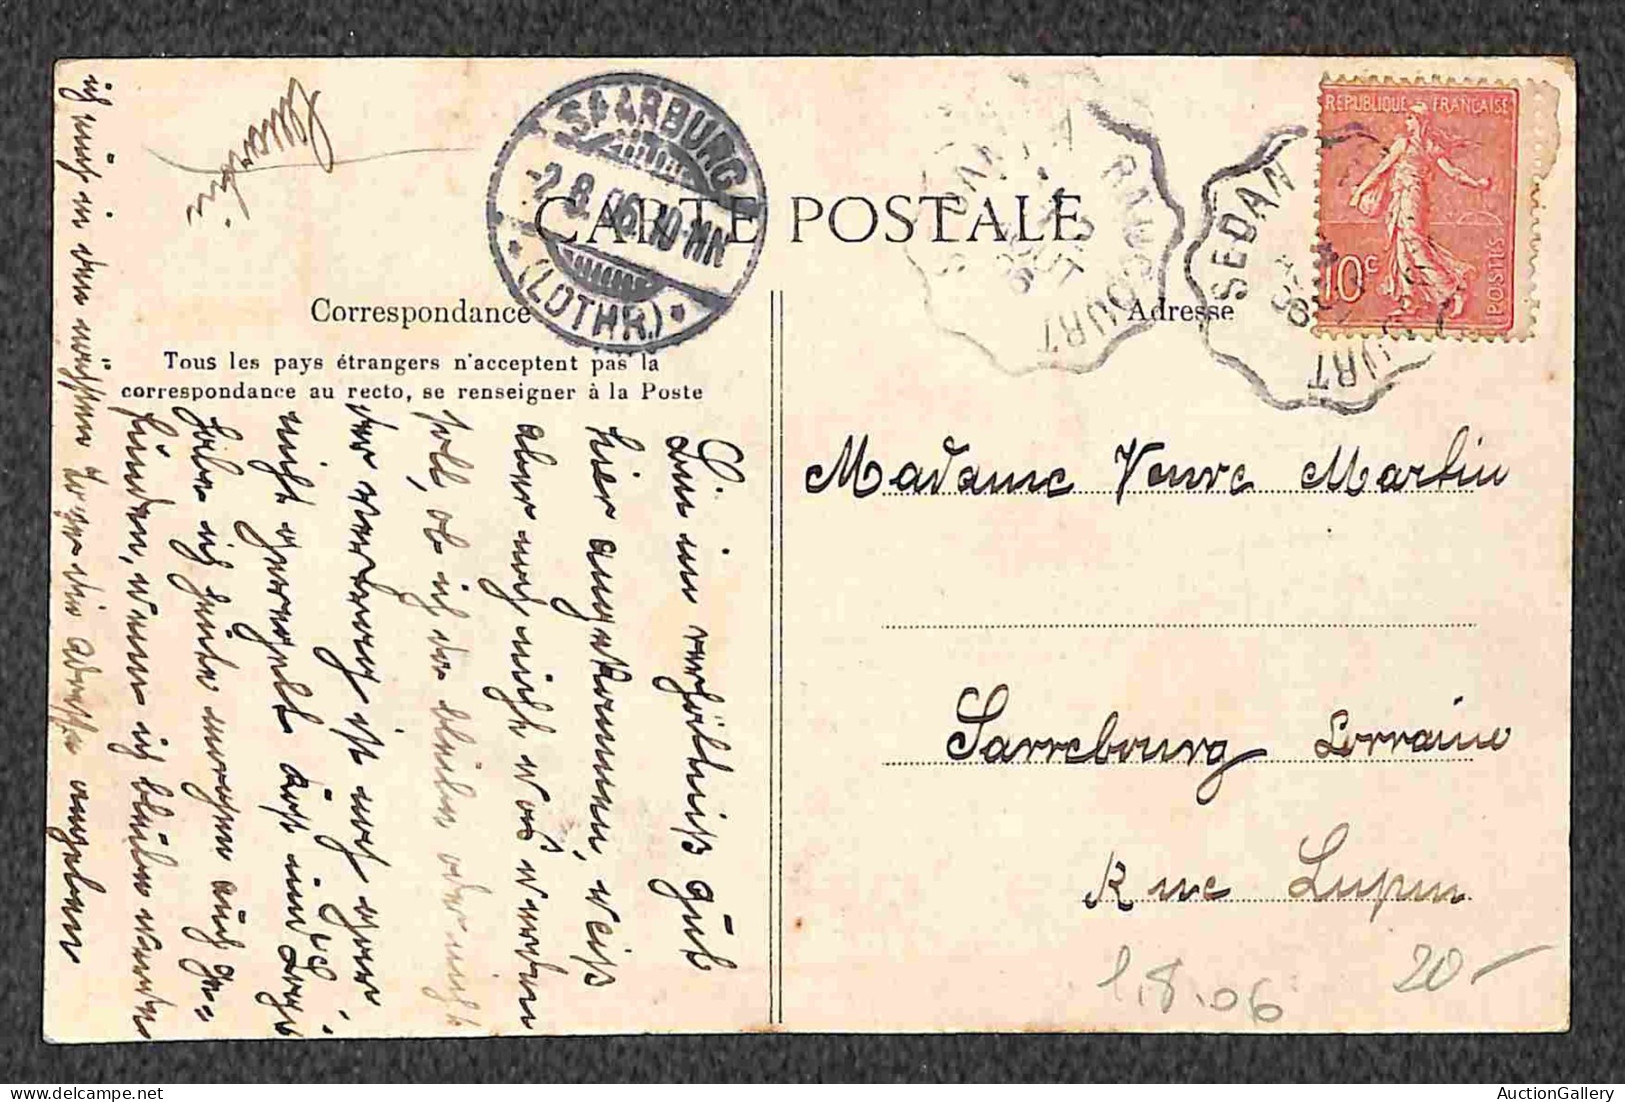 Europa - Francia - 1904/1936 - 6 cartoline (animate) usate nel periodo